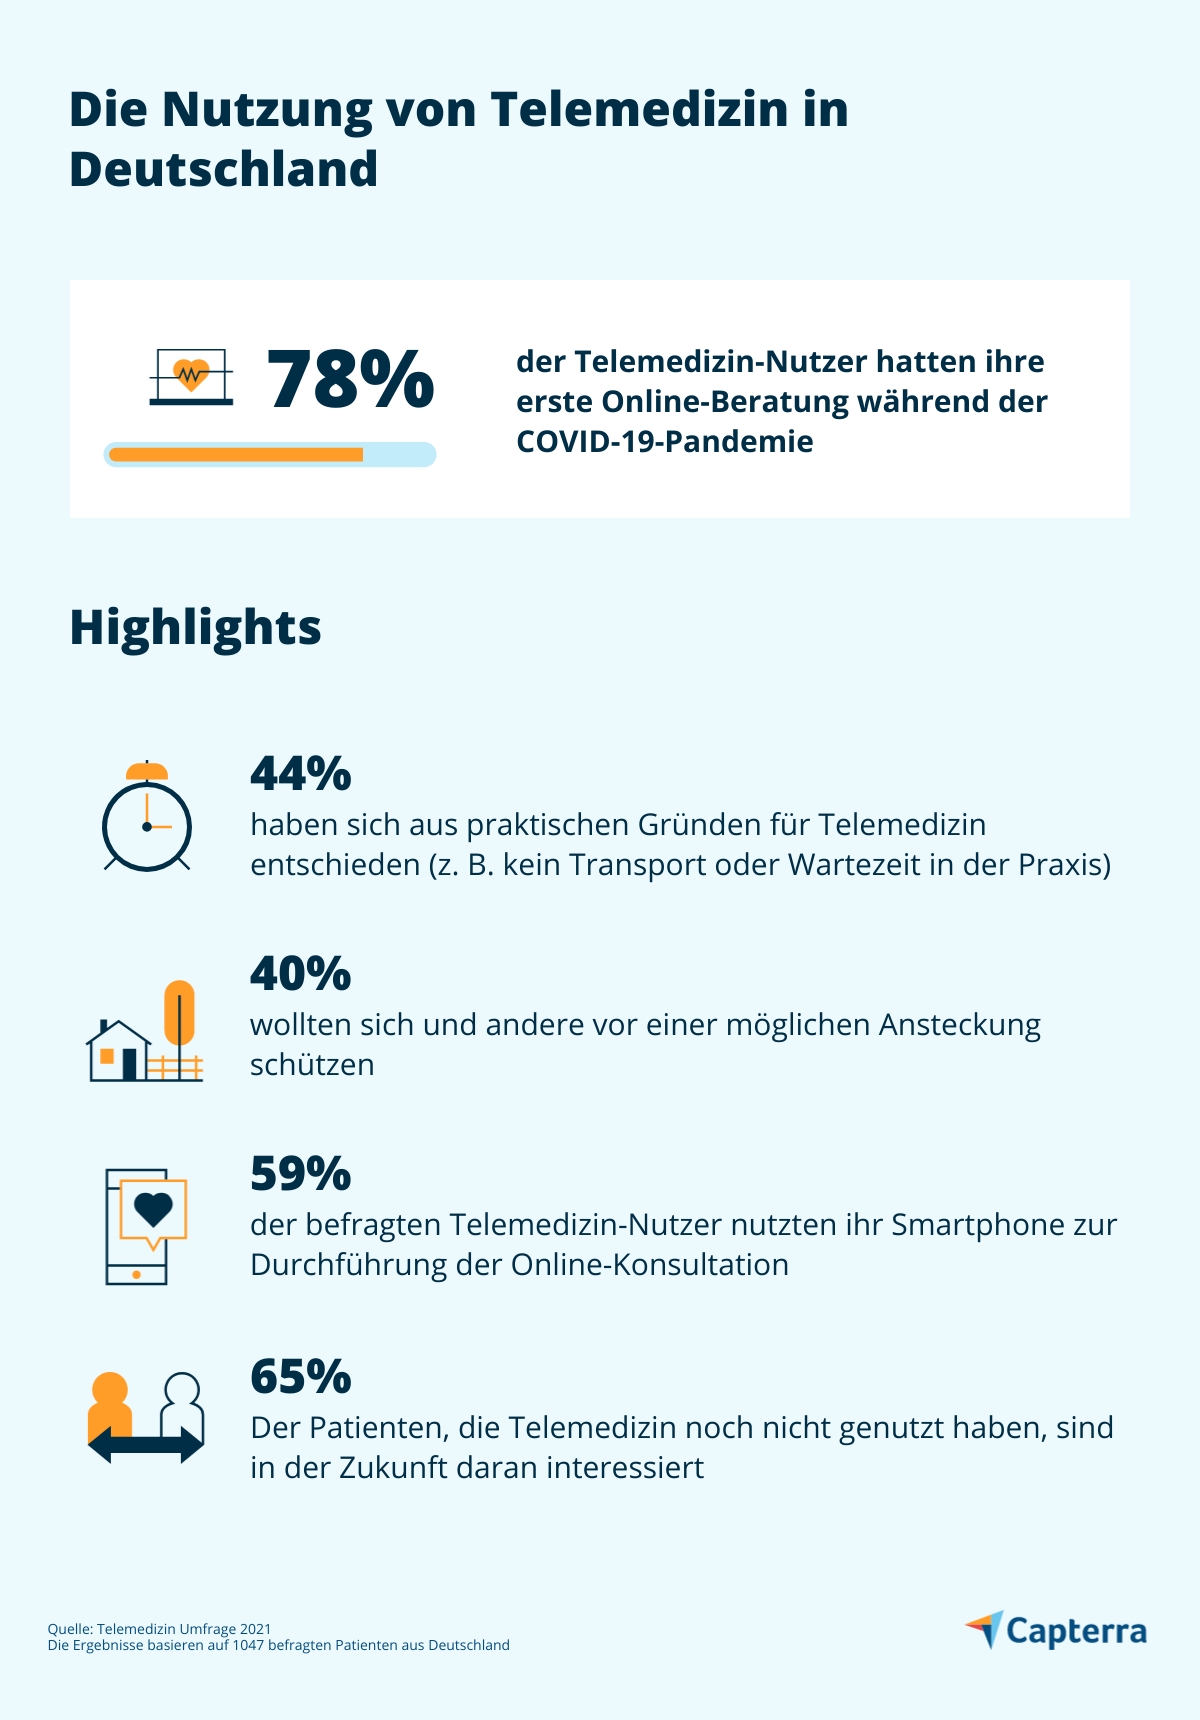 Die Nutzung von Telemedizin in Deutschland